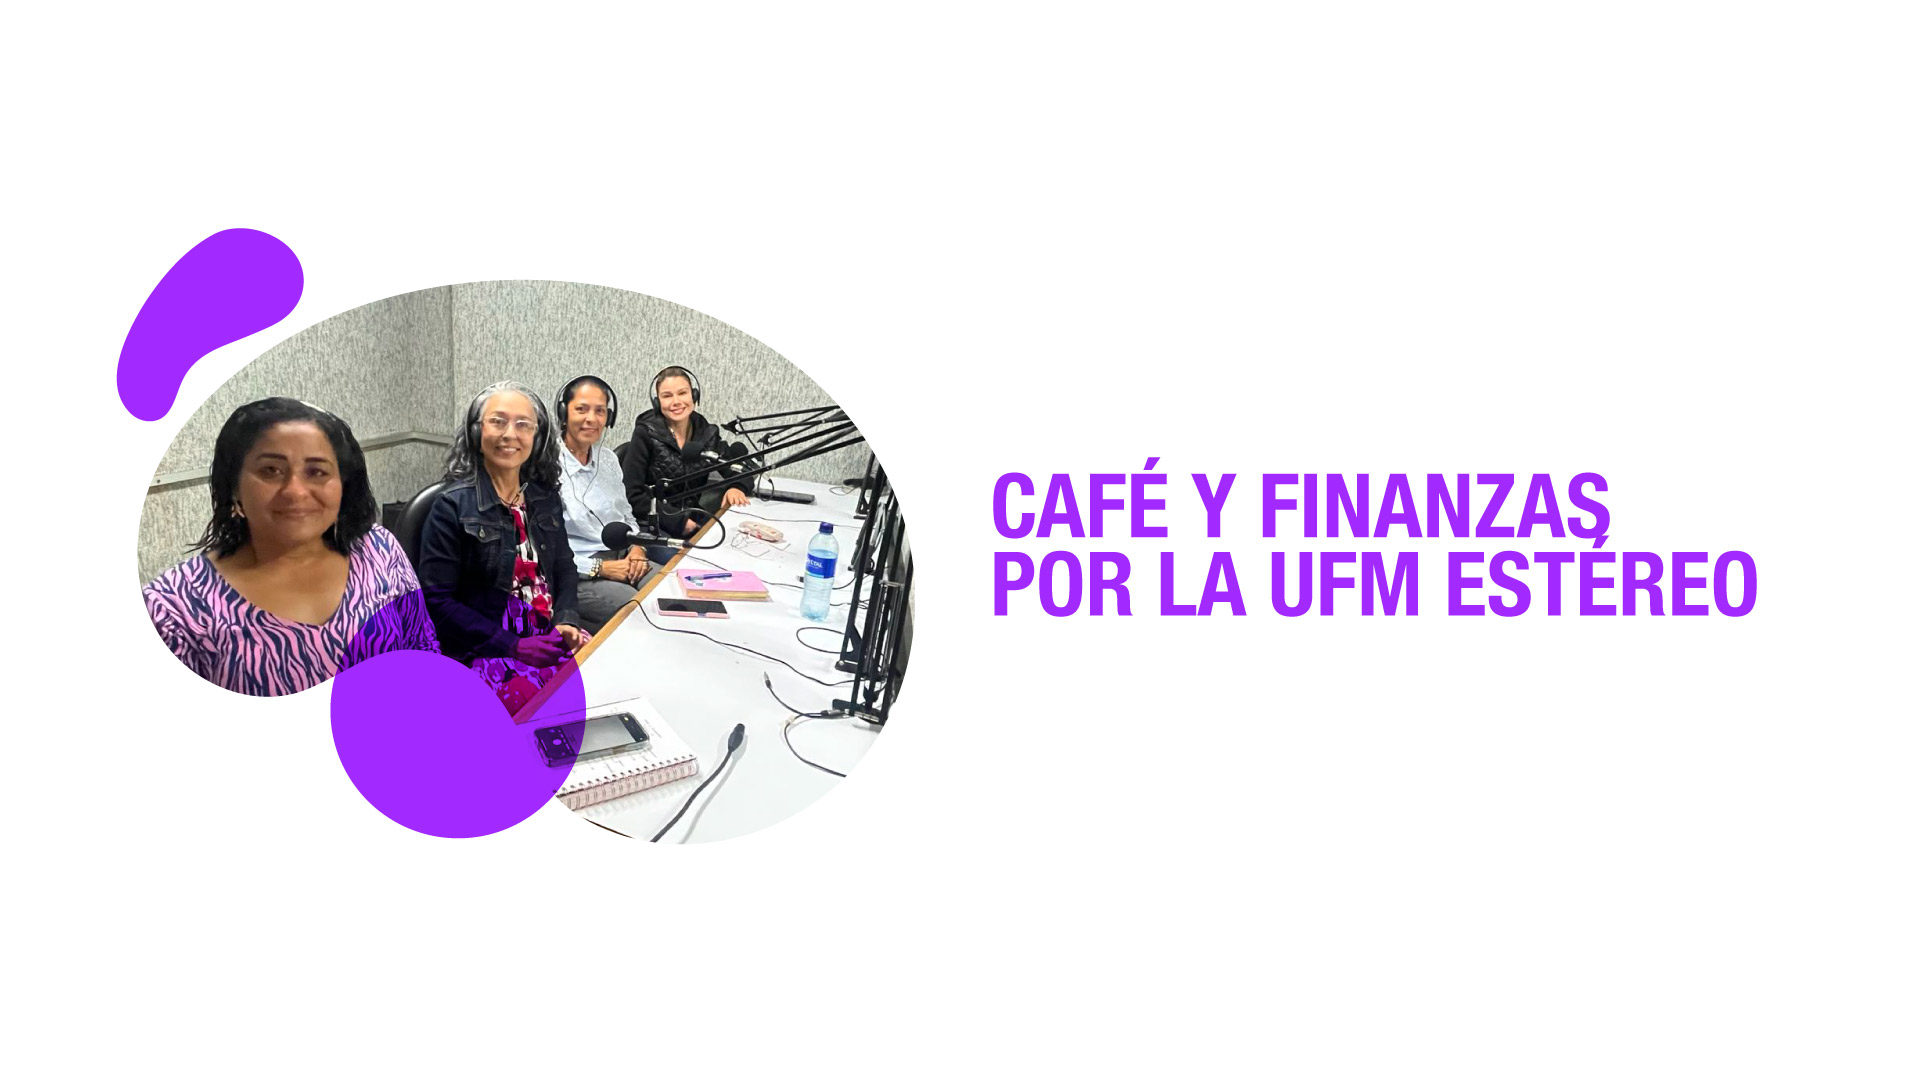 Los lunes de 8 a 8:30 a. m. sintonice "Café y Finanzas" por la UFM 102.1